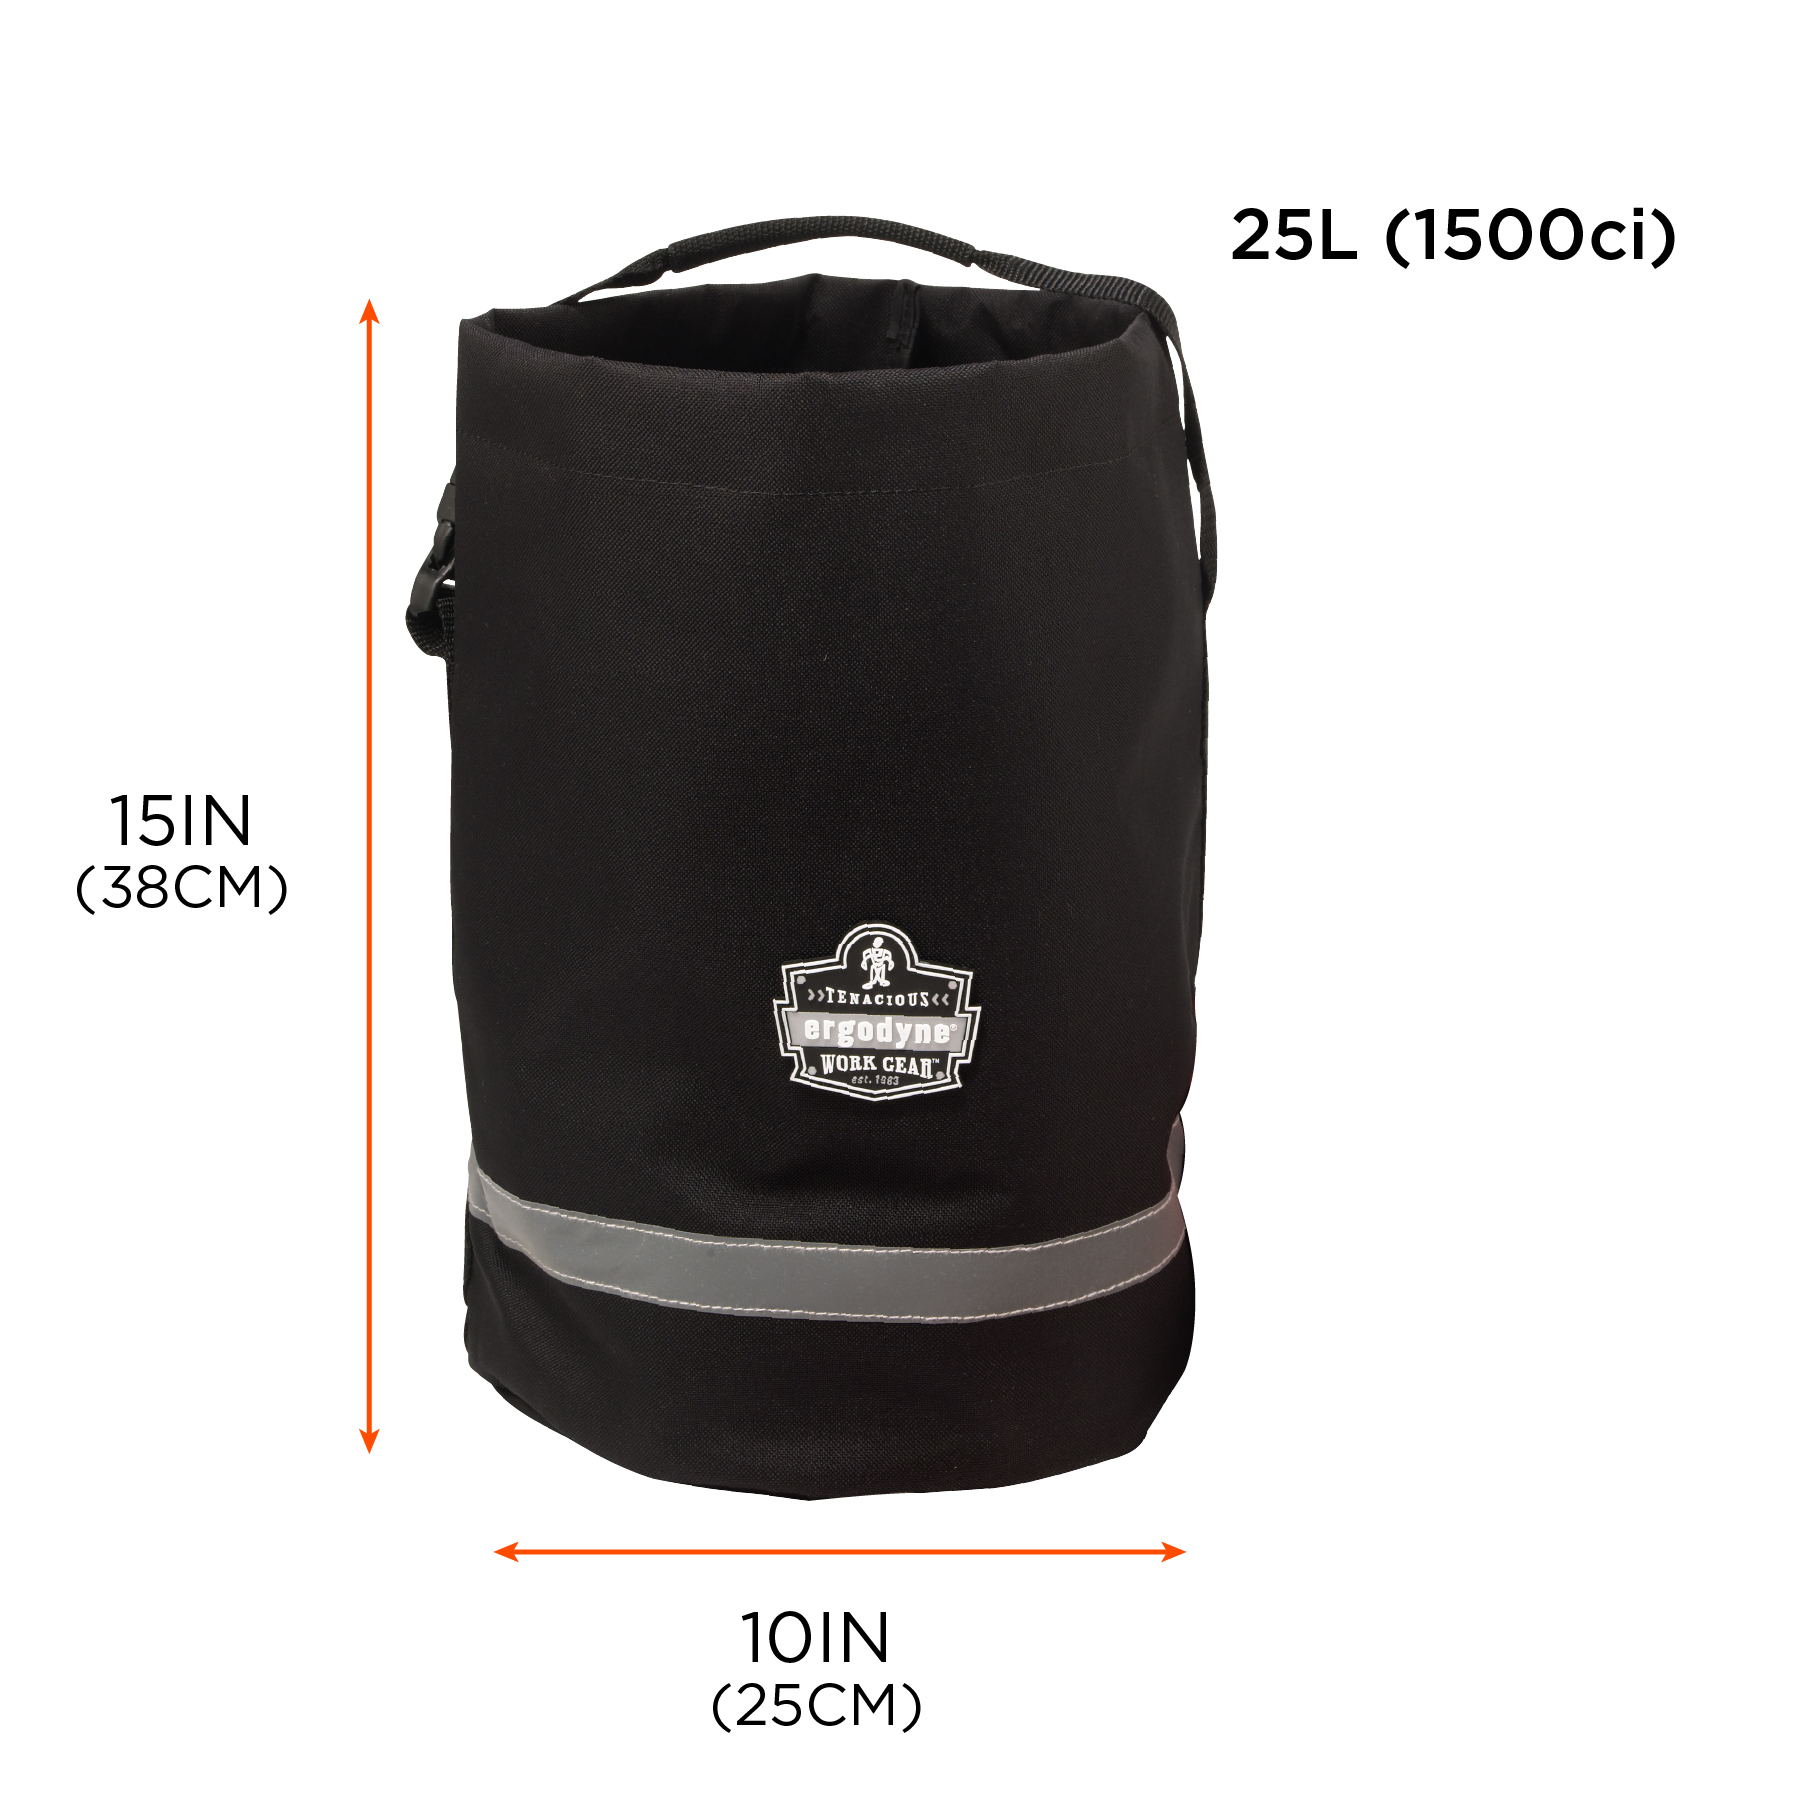 Fall Protection Gear Storage Bag | Ergodyne